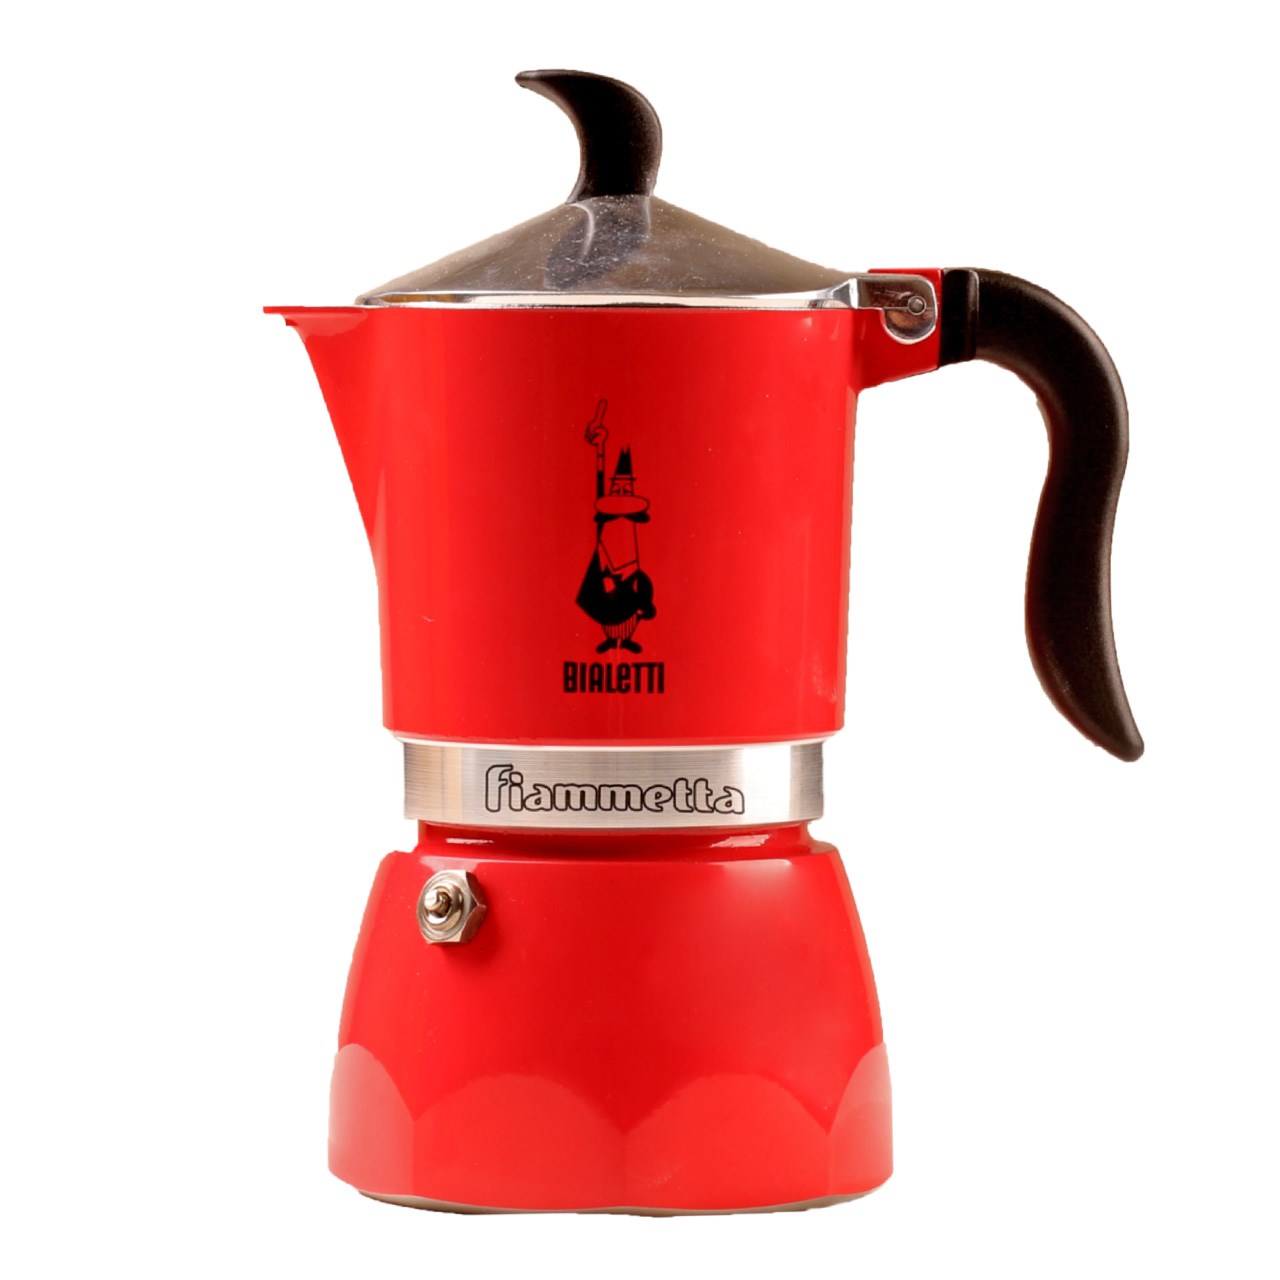 قهوه جوش بیالتی مدل Fiammetta 1